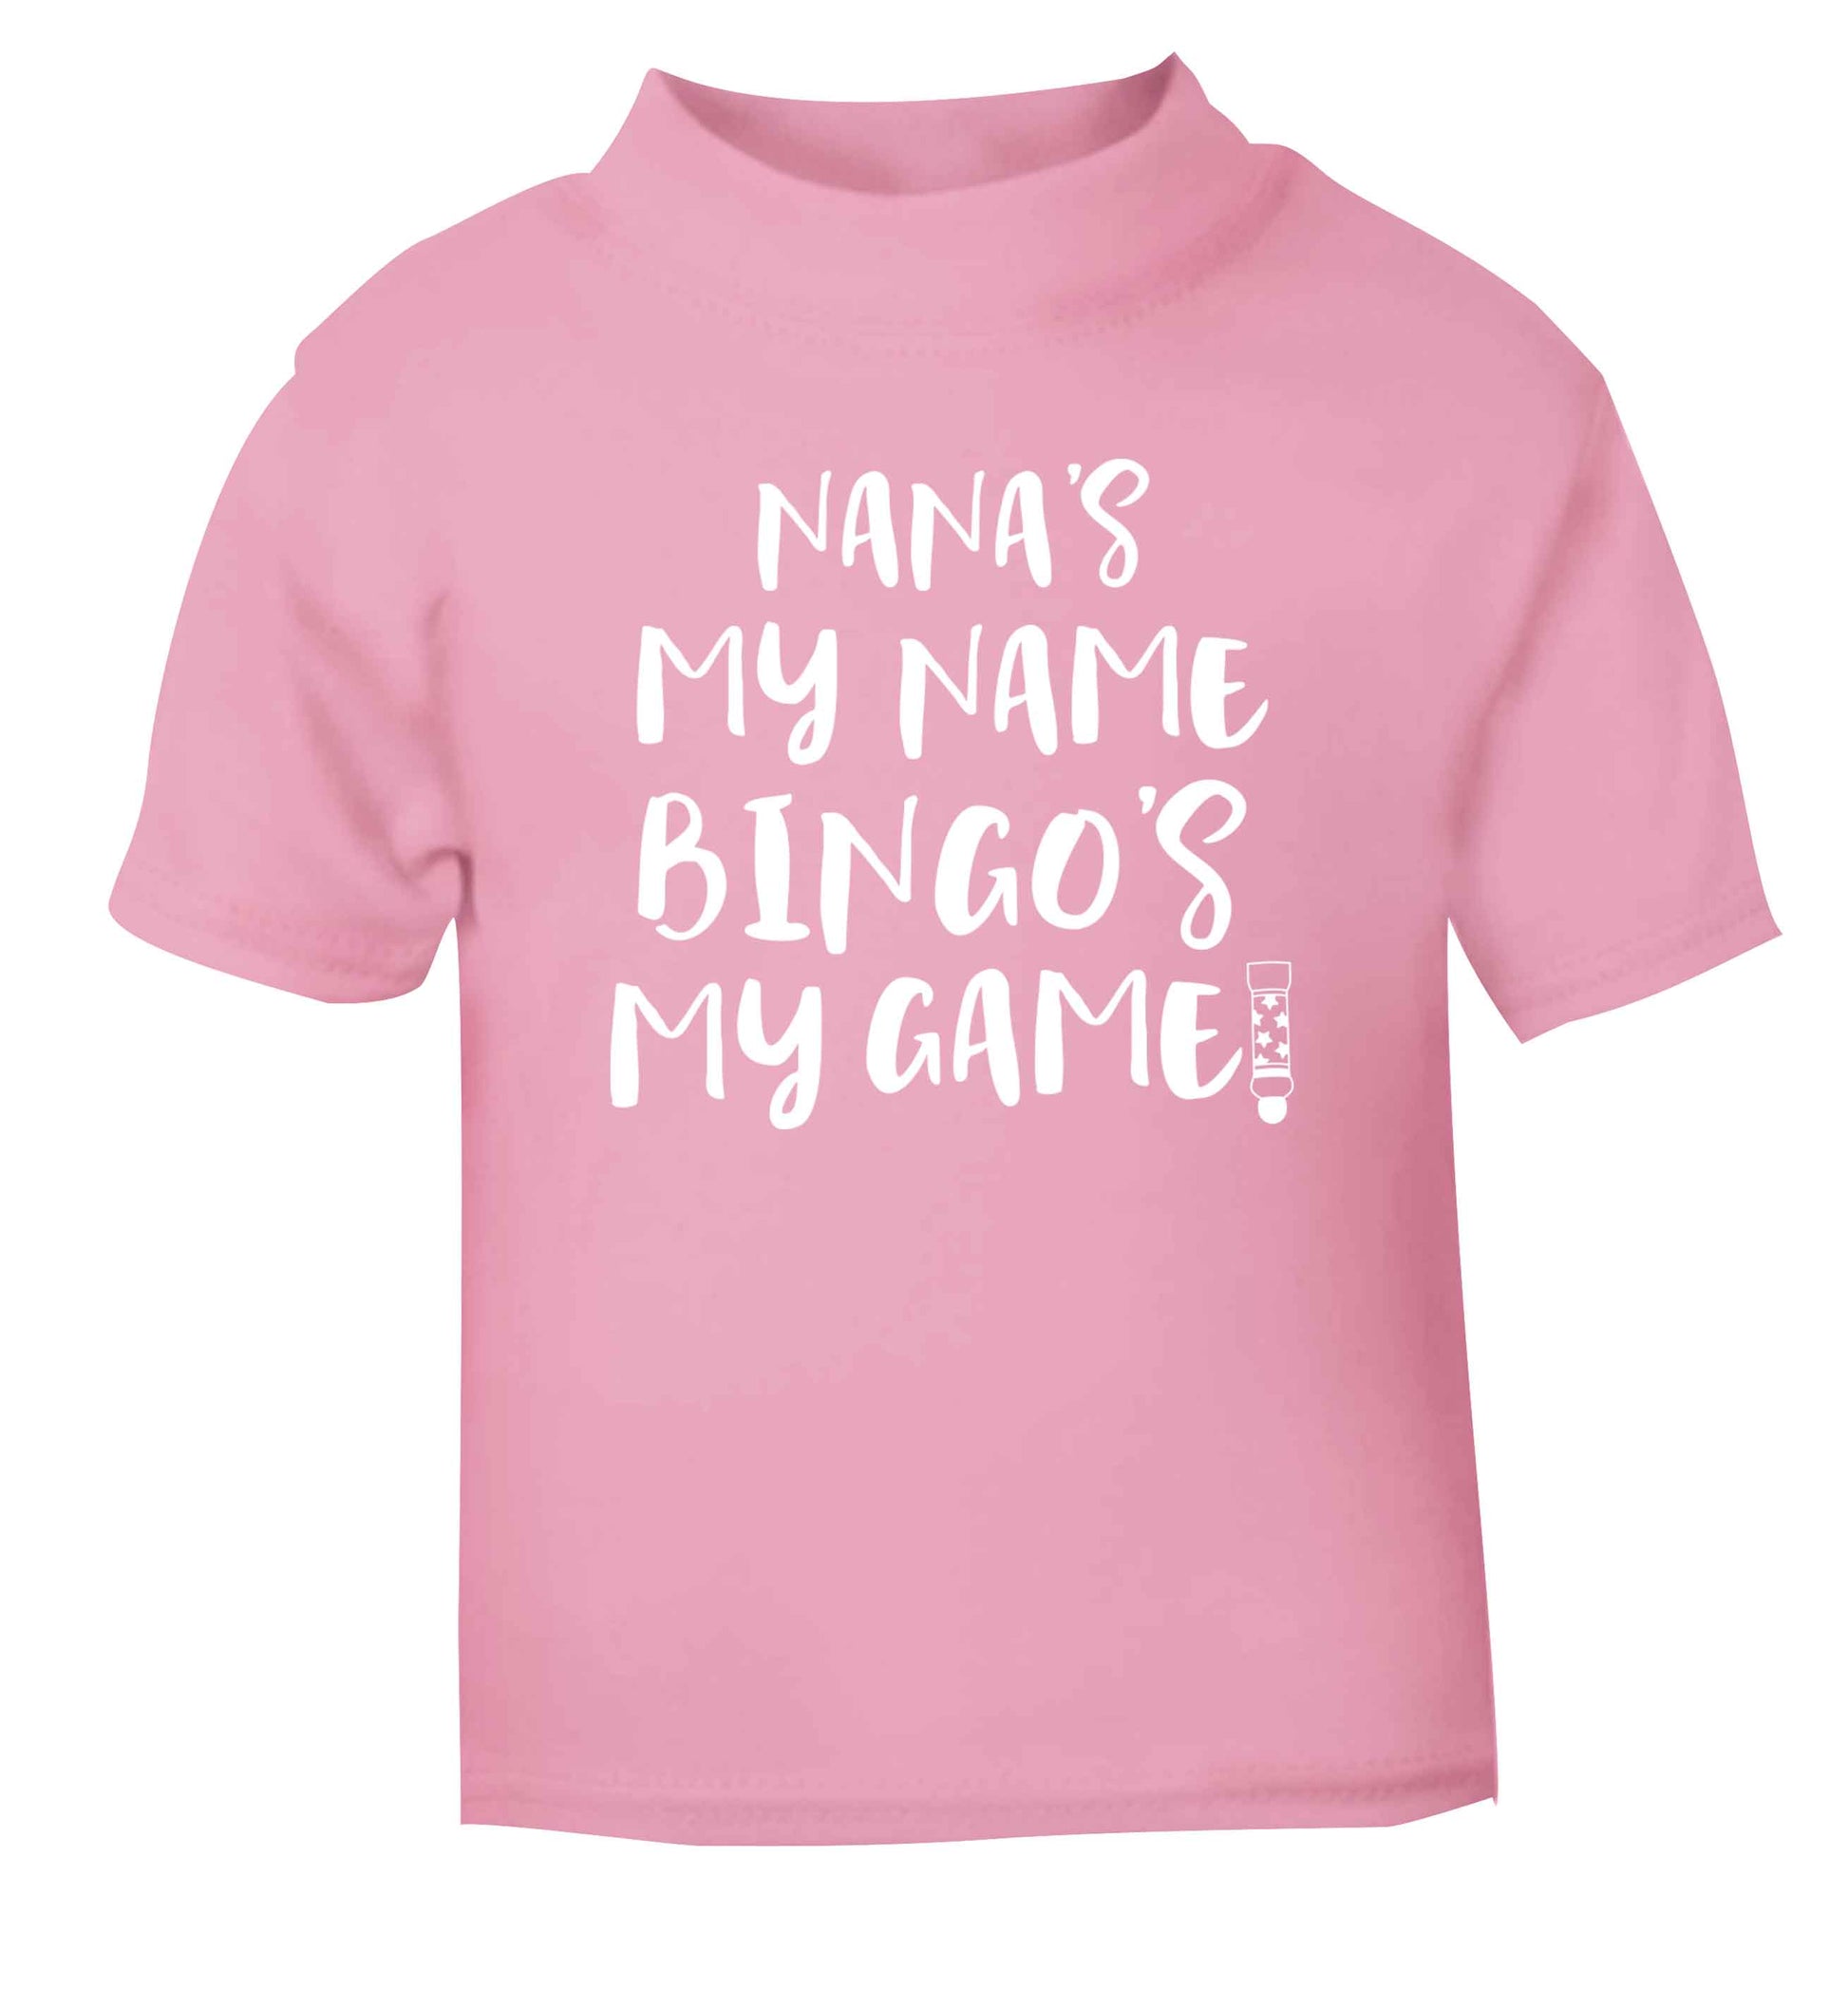 Nana's my name bingo's my game! light pink Baby Toddler Tshirt 2 Years